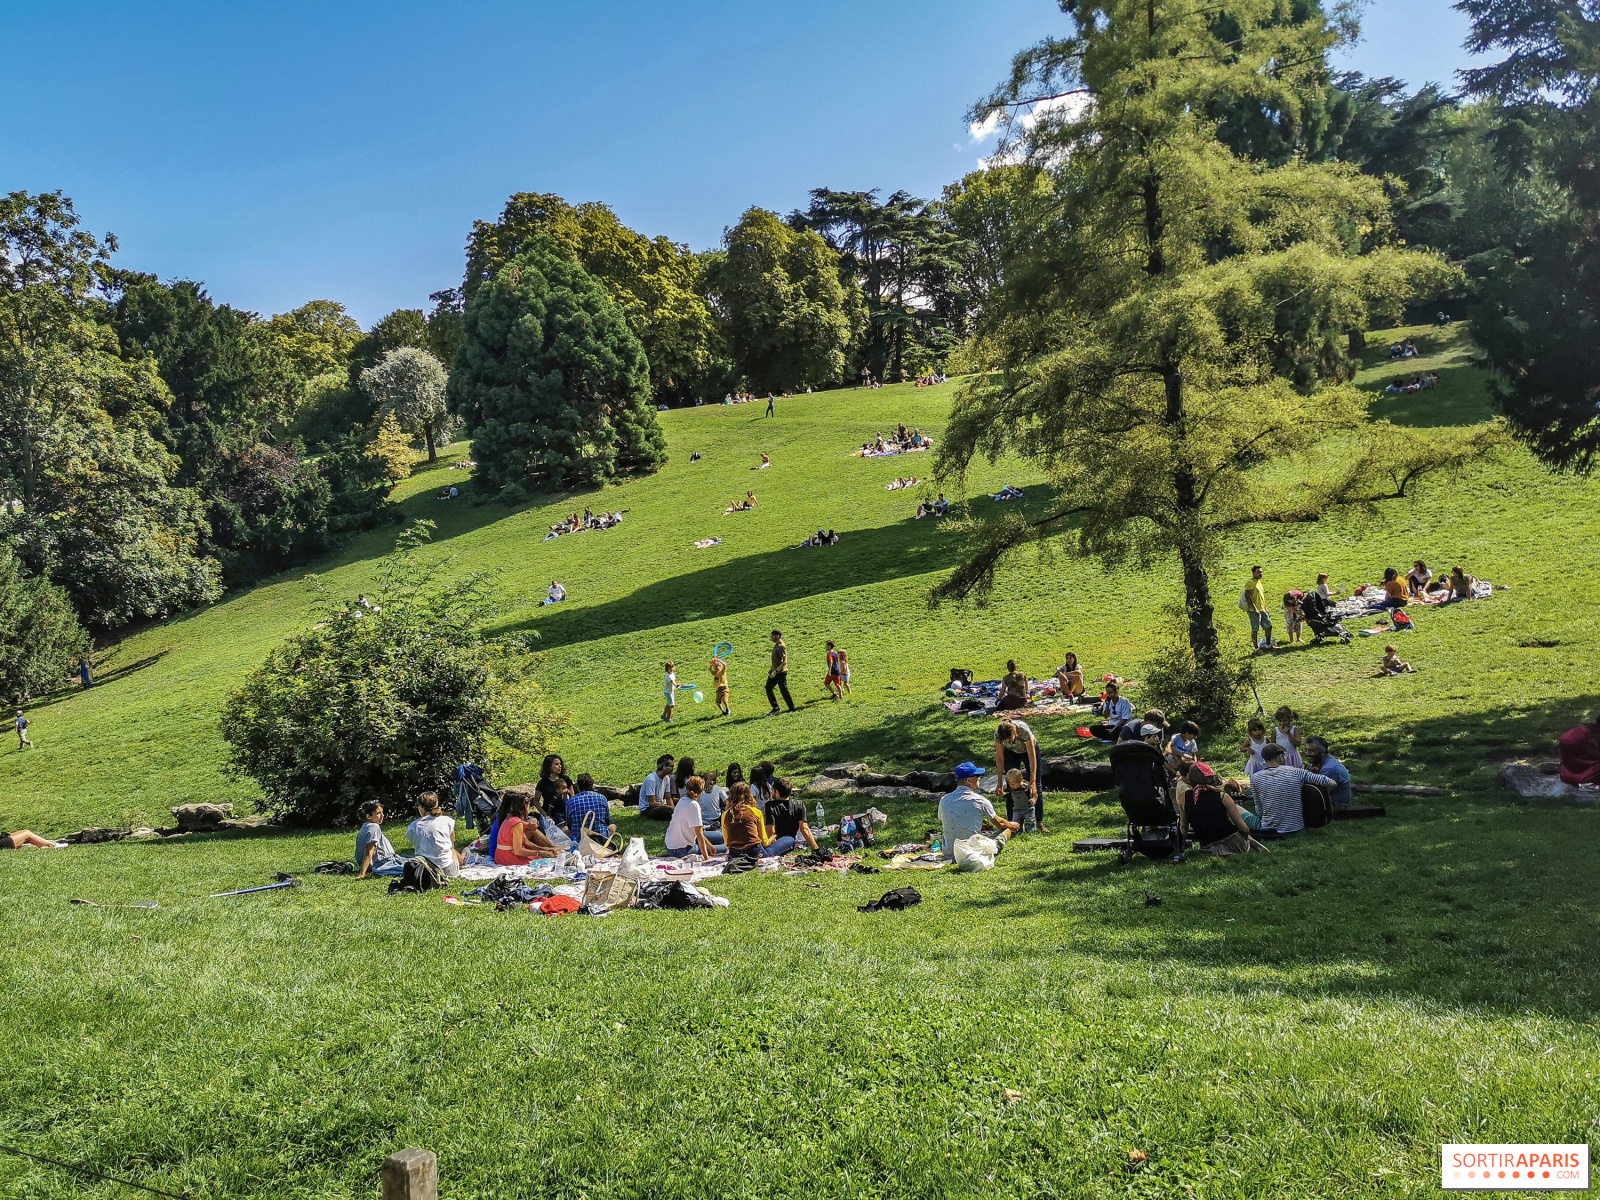 Picnicking In Paris This Summer 2020 The Best Sposts Sortiraparis Com